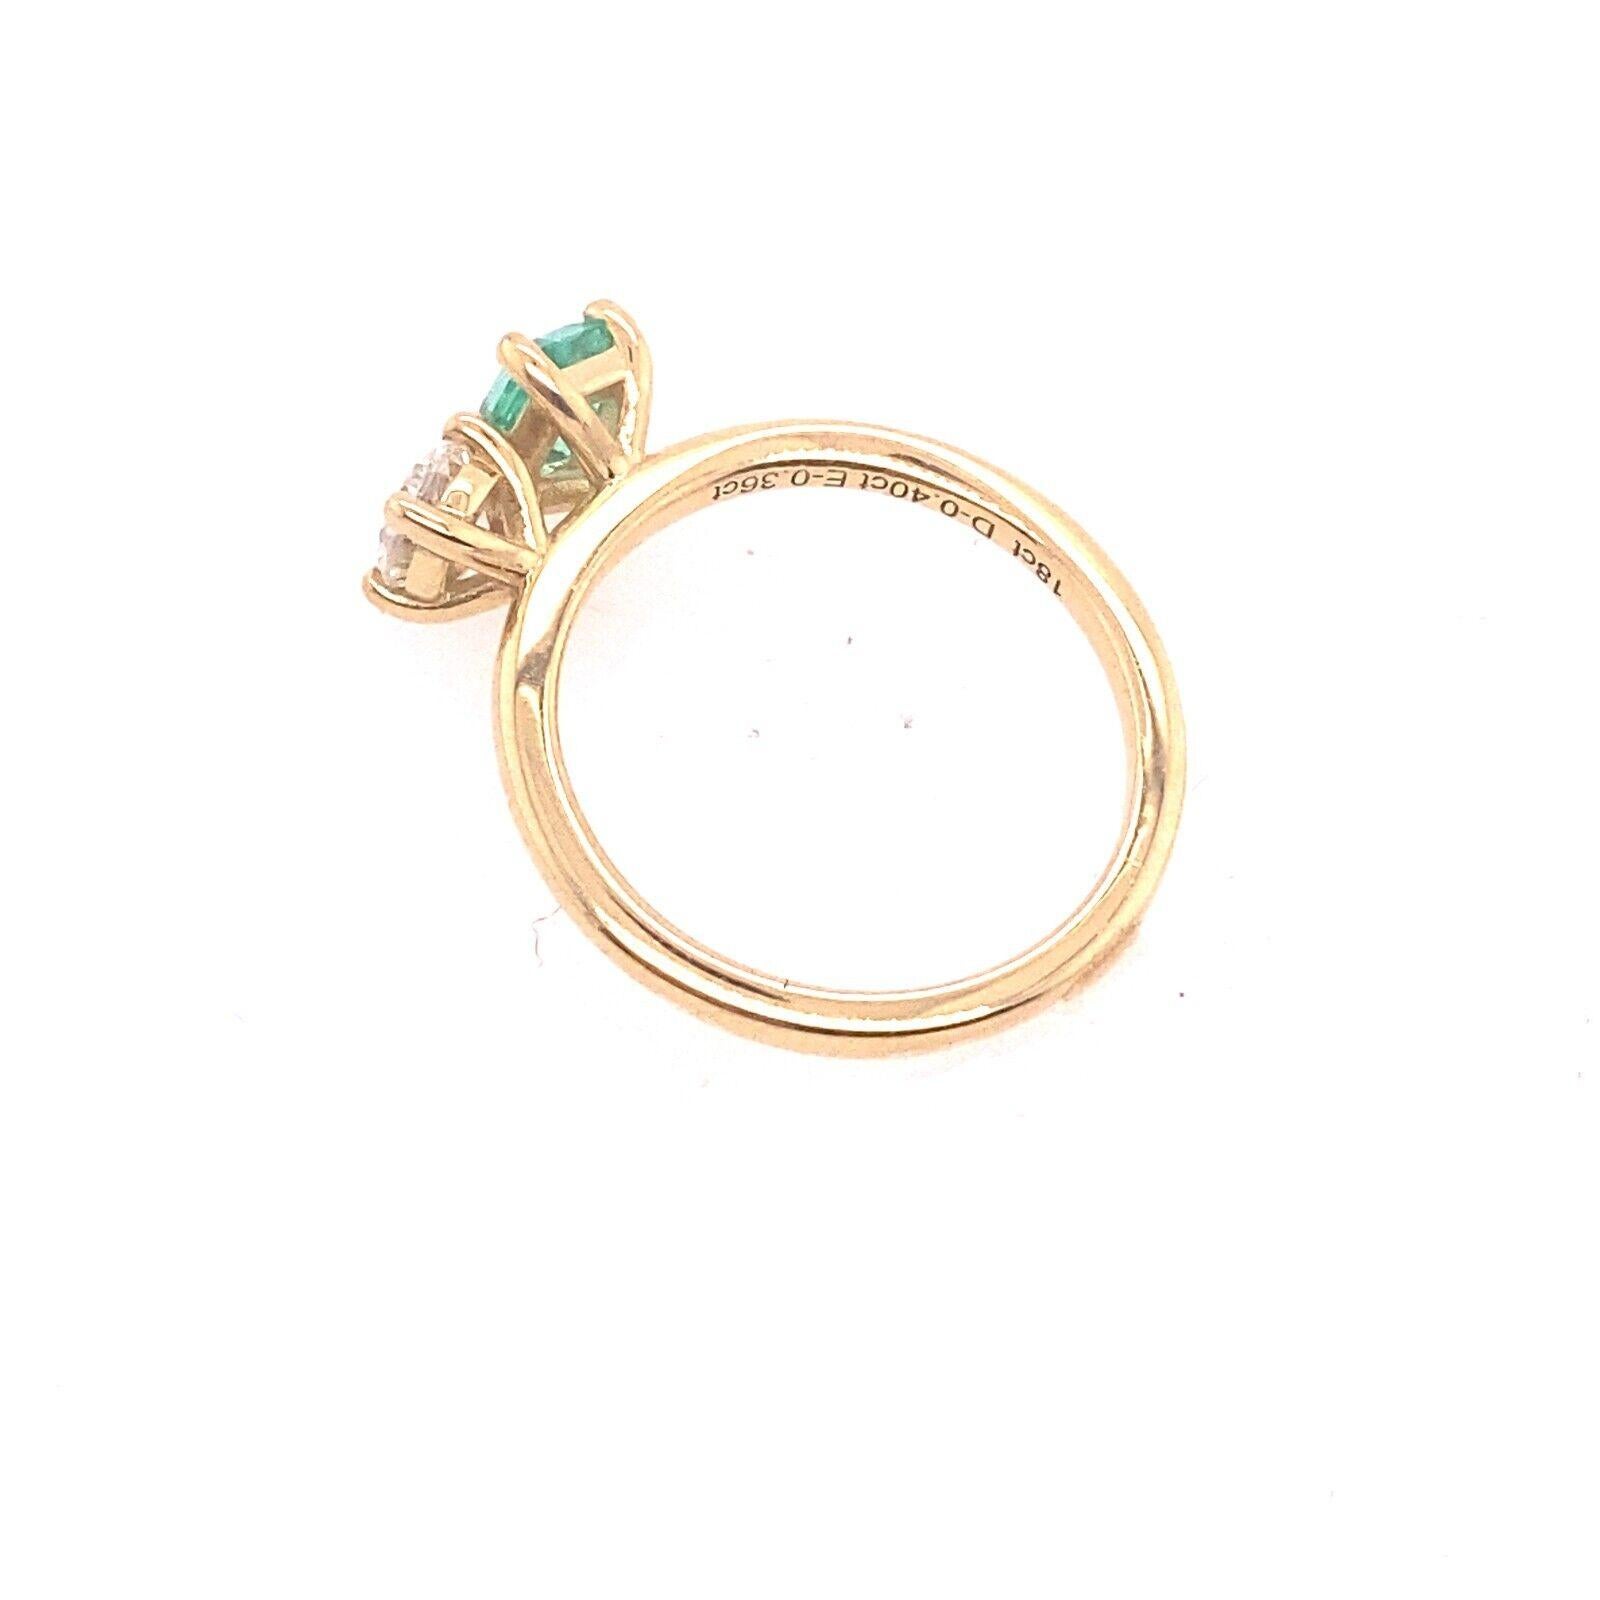 EGL cert Baguette Smaragd &0.40ct natürlichen Diamanten Ring, Set in 18ct Gelbgold
Eleganz und Stil vereinen sich in diesem wunderschönen Ring mit Smaragd und Diamant. Dieser Ring aus 18-karätigem Gelbgold ist mit einem Smaragd im Baguetteschliff